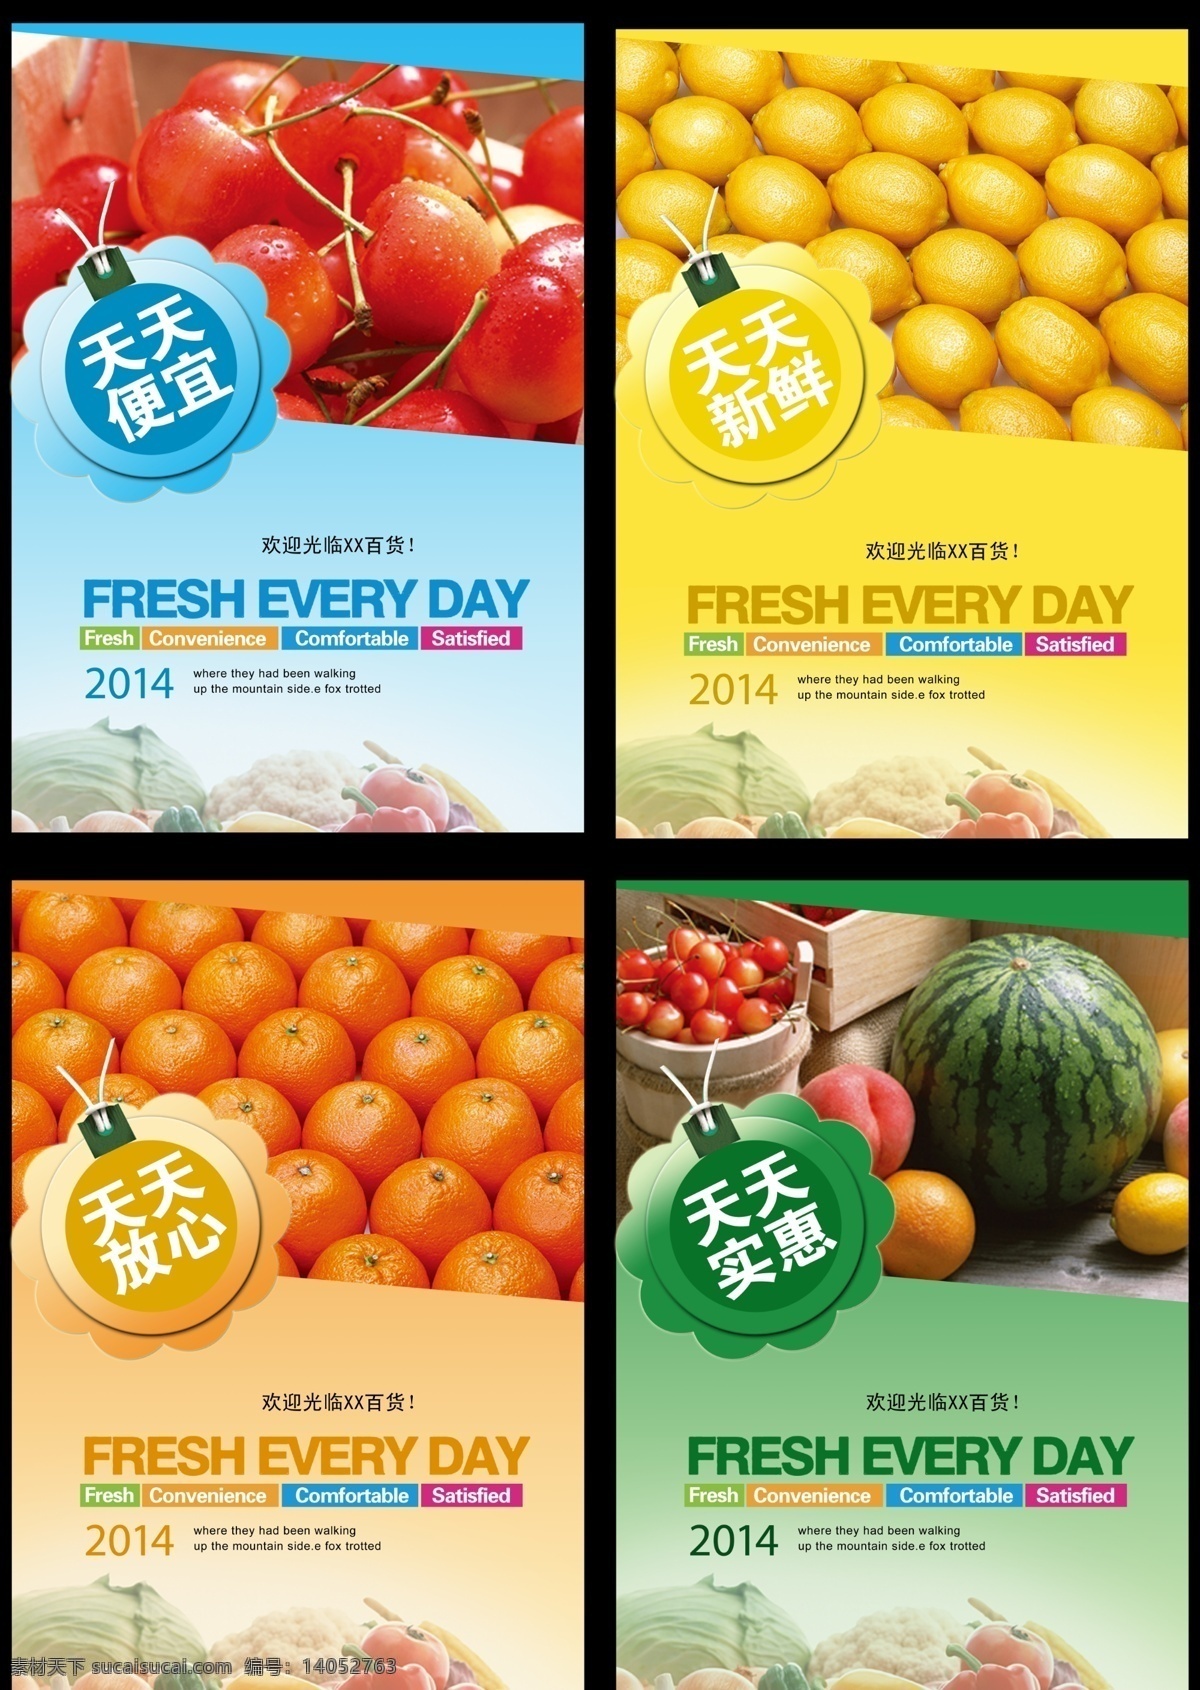 超市海报 广告设计模板 水果海报 水果图片 源文件 超市 水果 模板下载 夏天水果 促销海报